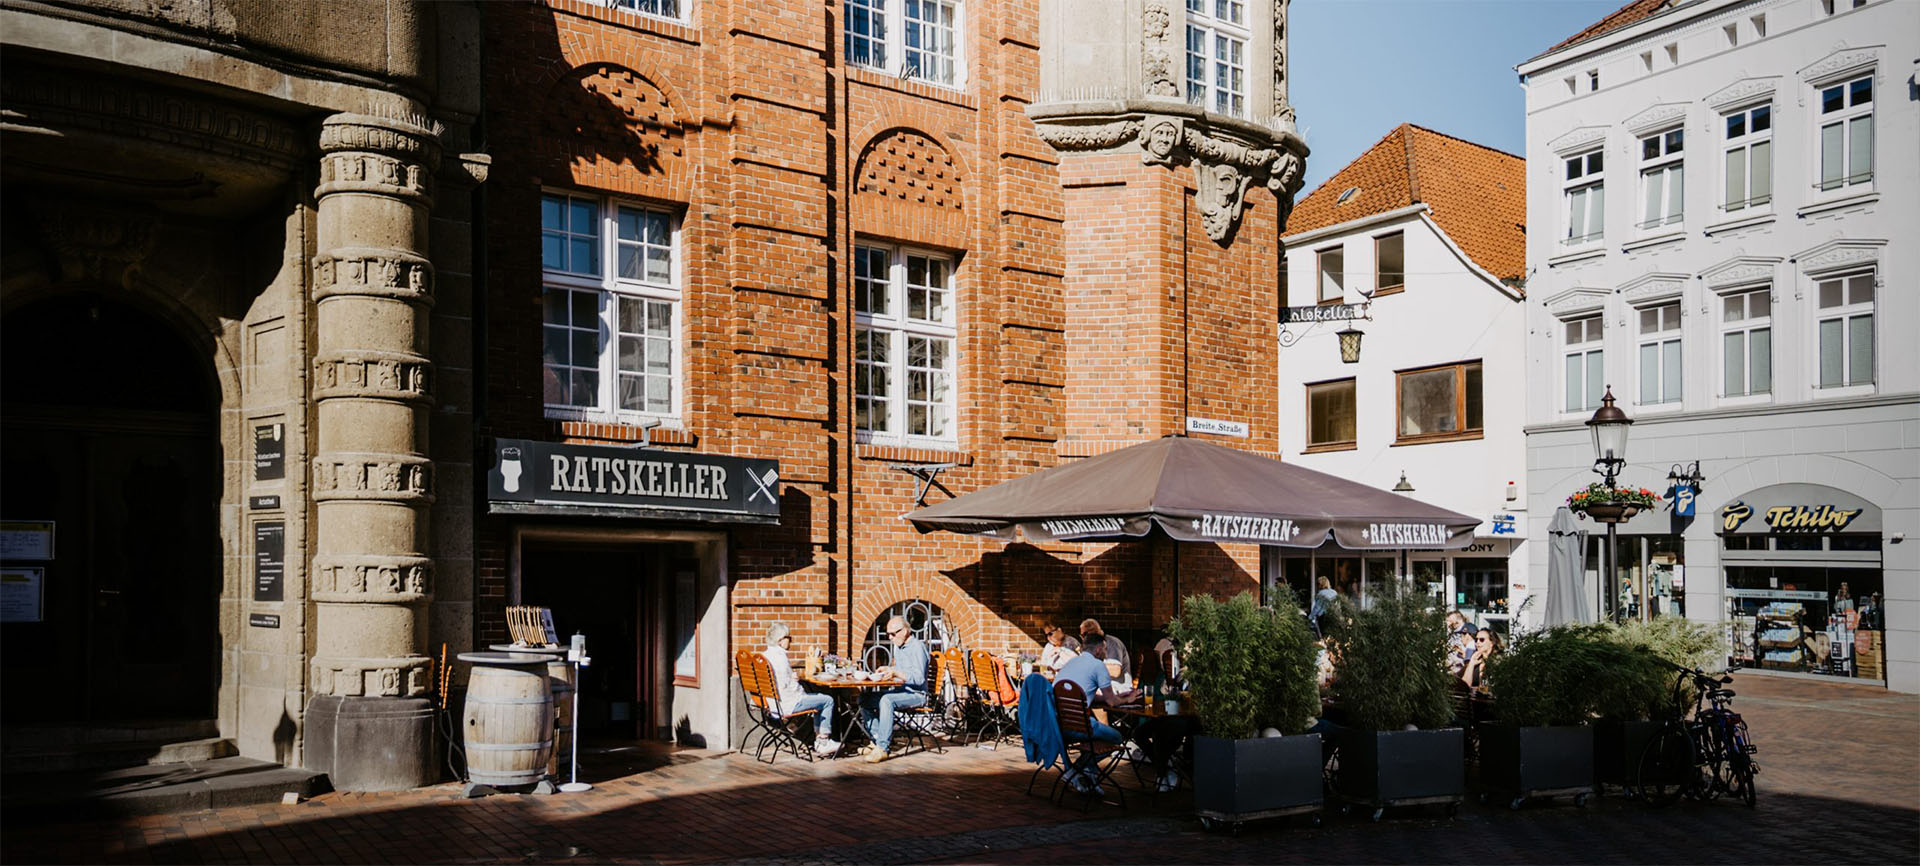 Ratskeller Buxtehude Restaurant von außen